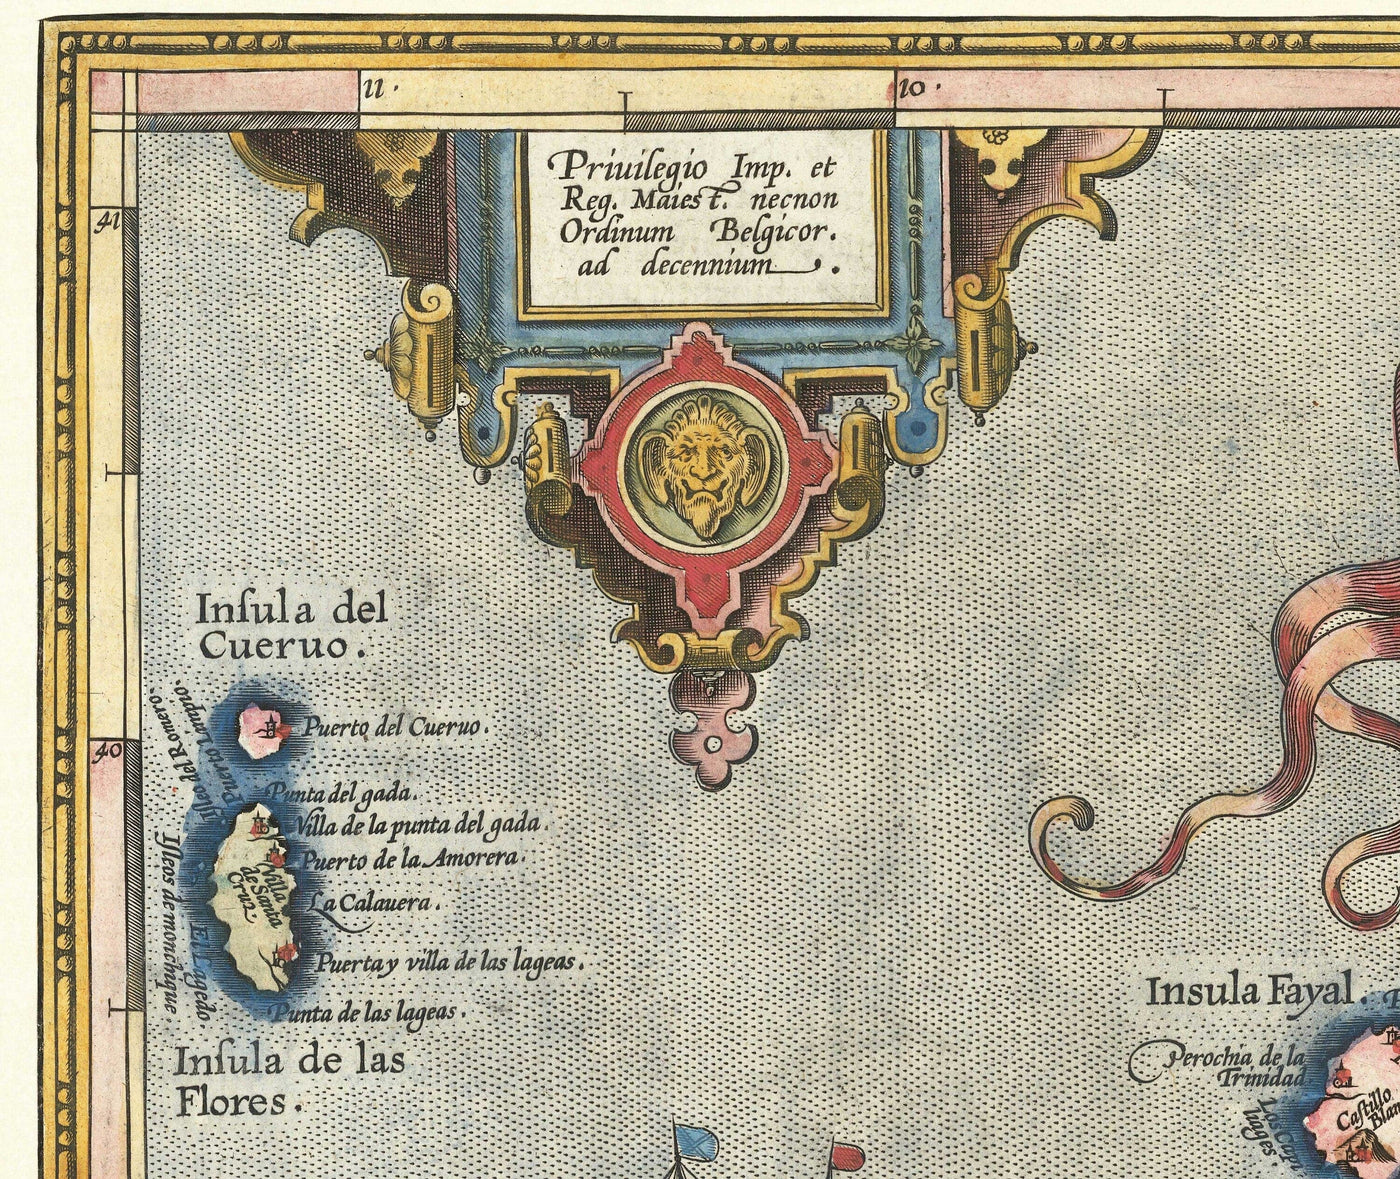 Alte Karte der Azoren von Abraham Ortelius, 1573 - Sao Miguel, Pico, Terceira, São Jorge, Faial, Portugal, Atlantik